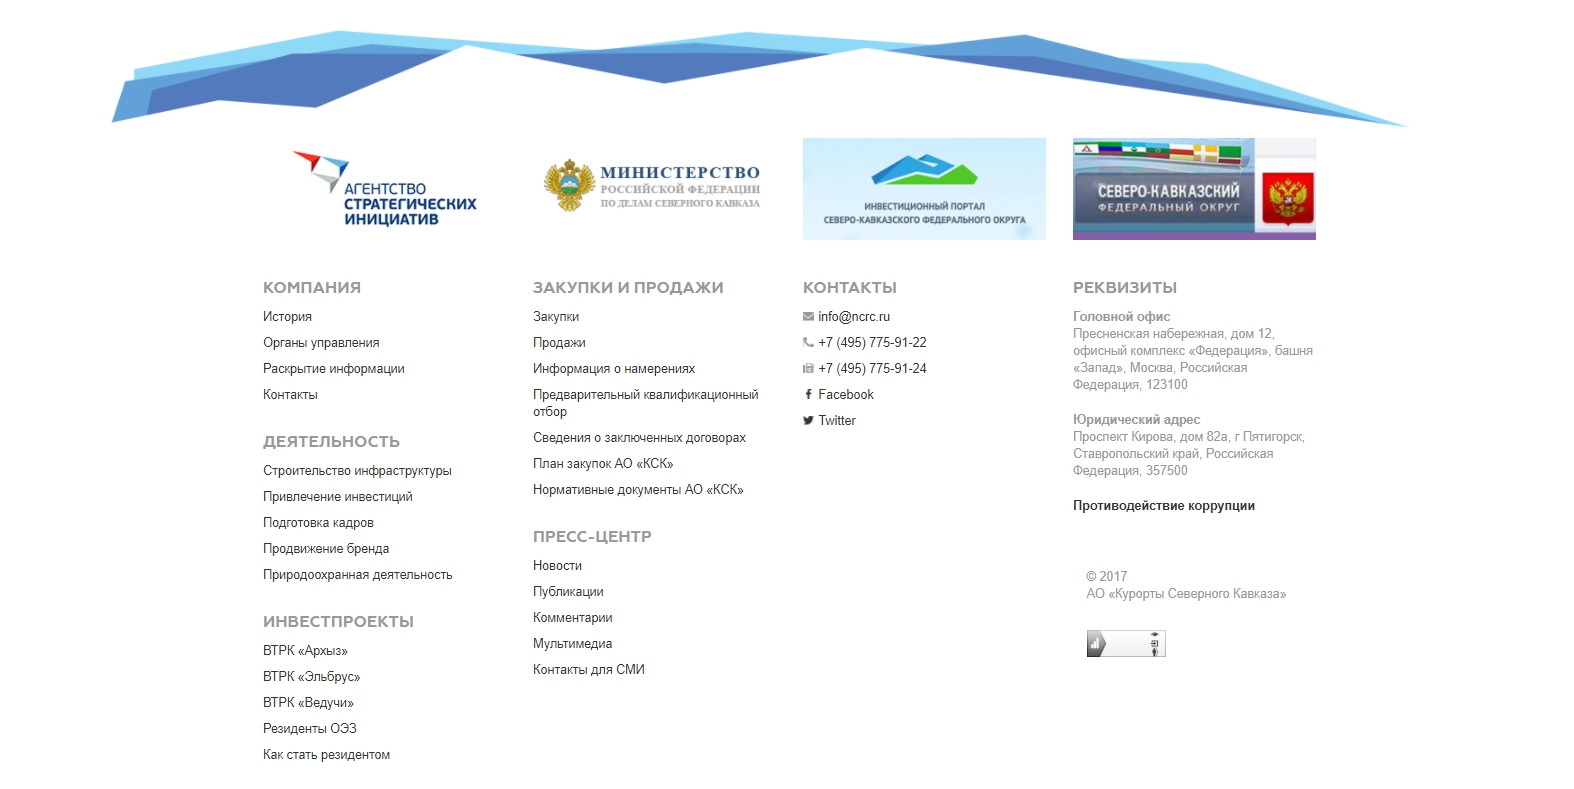 модернизация сайта оао «курорты северного кавказа»